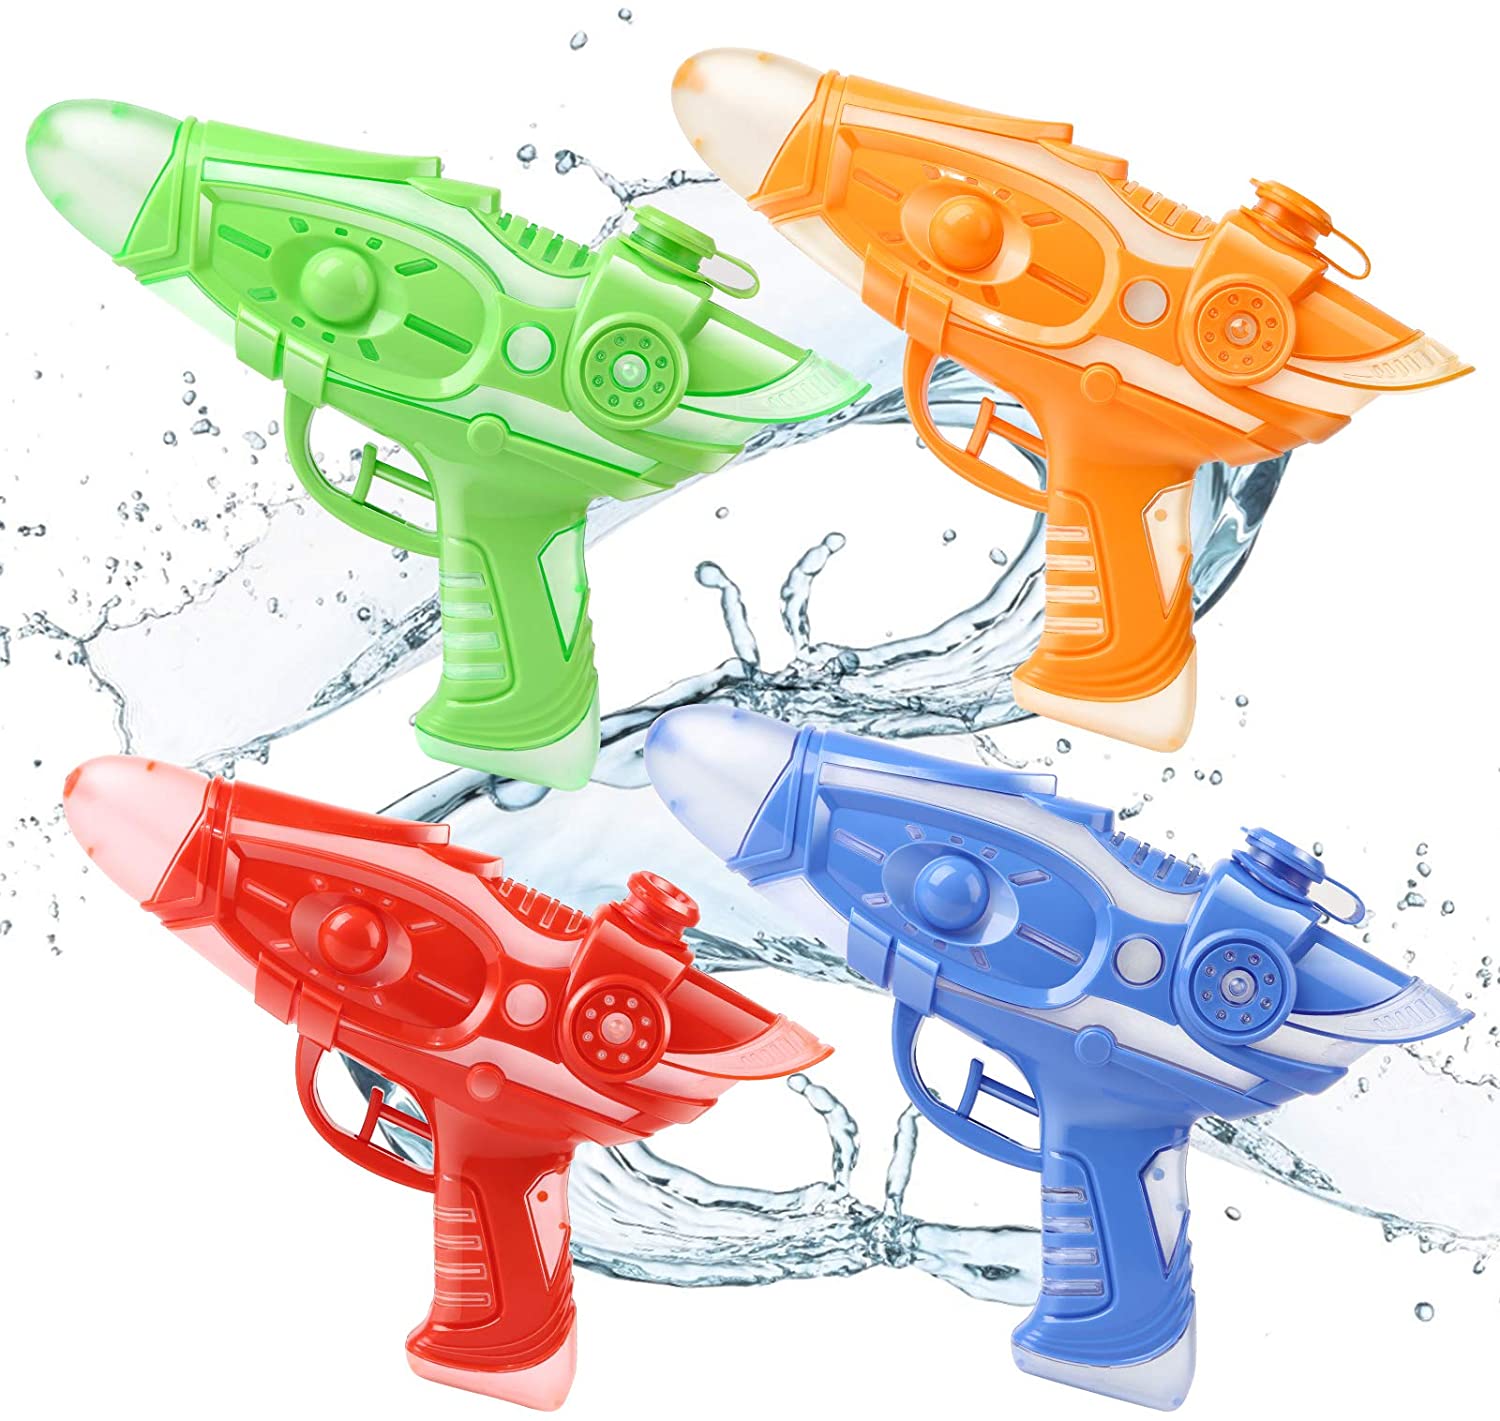 
                                    
                                Pistole ad acqua giocattolo e per adulti: i modelli migliori ed economici